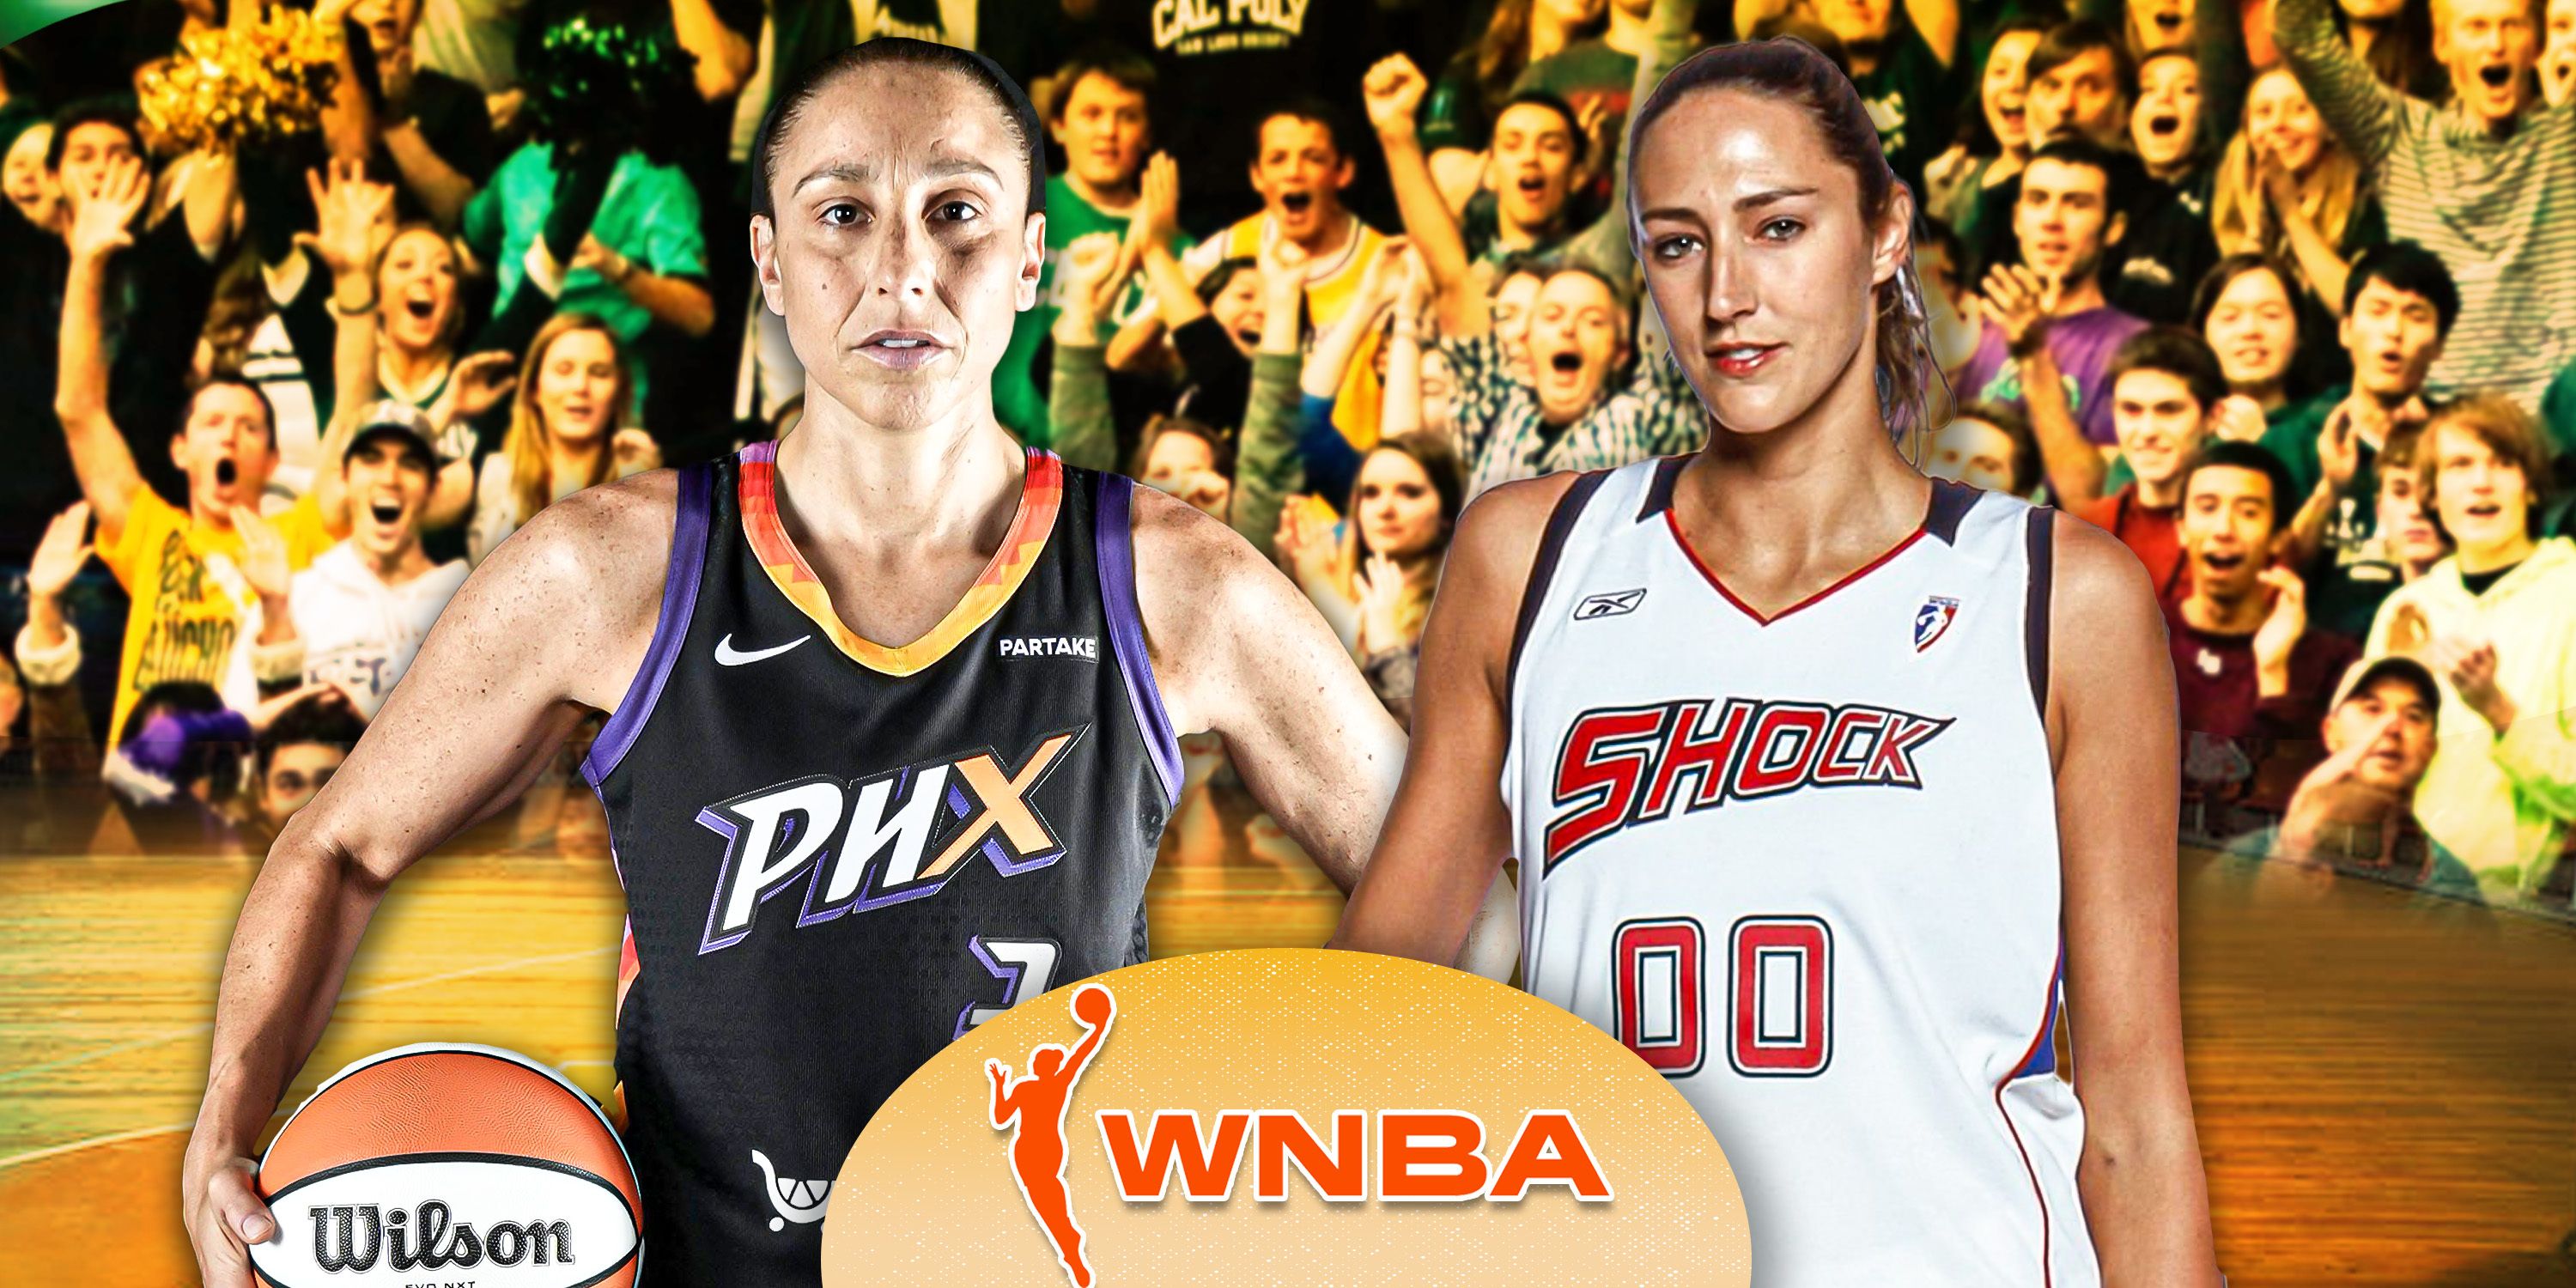 WNBA_Largest Crowds WNBA